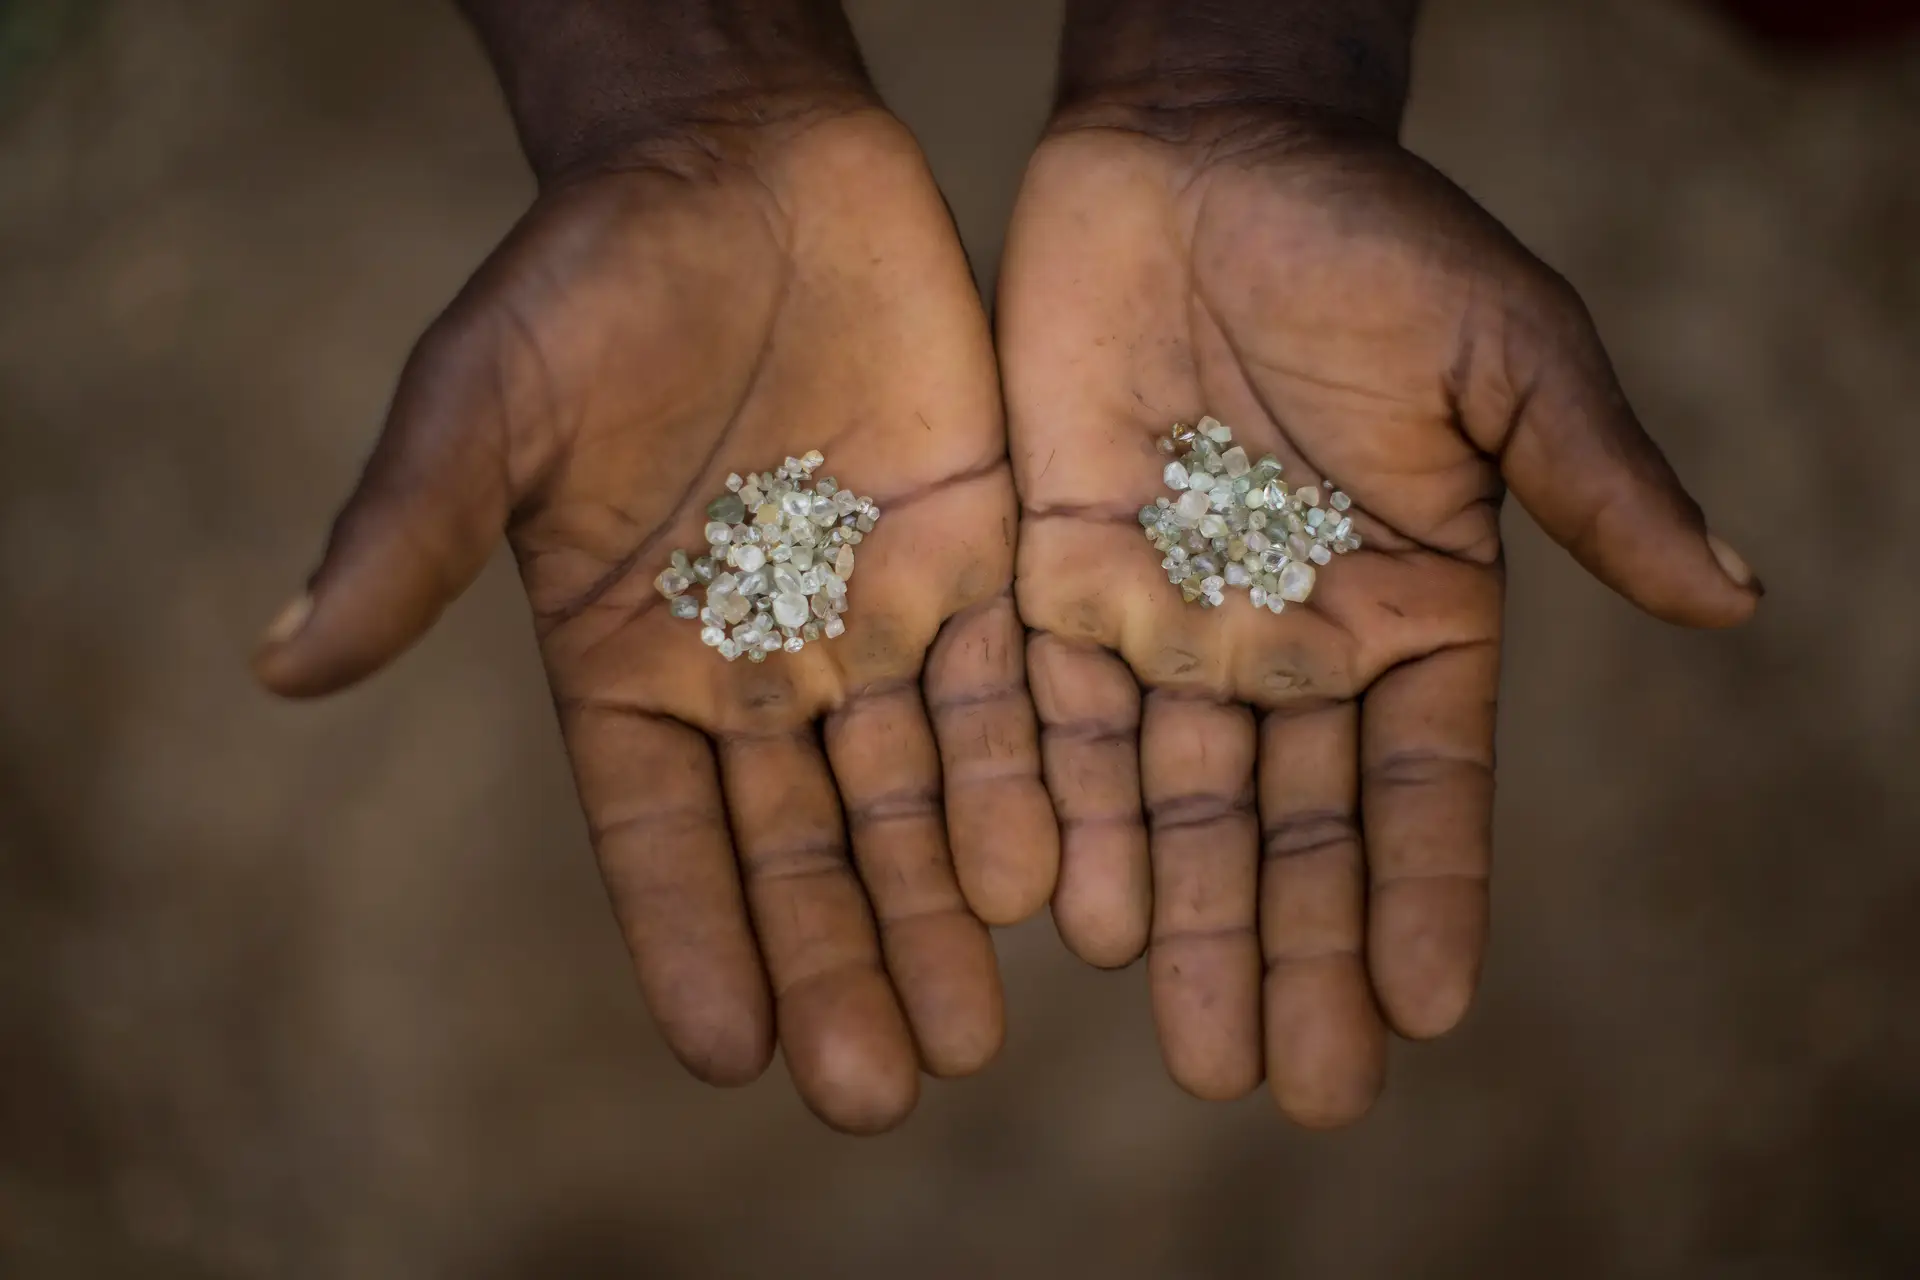 O fechamento da maior mina de diamantes do mundo aumentará valor